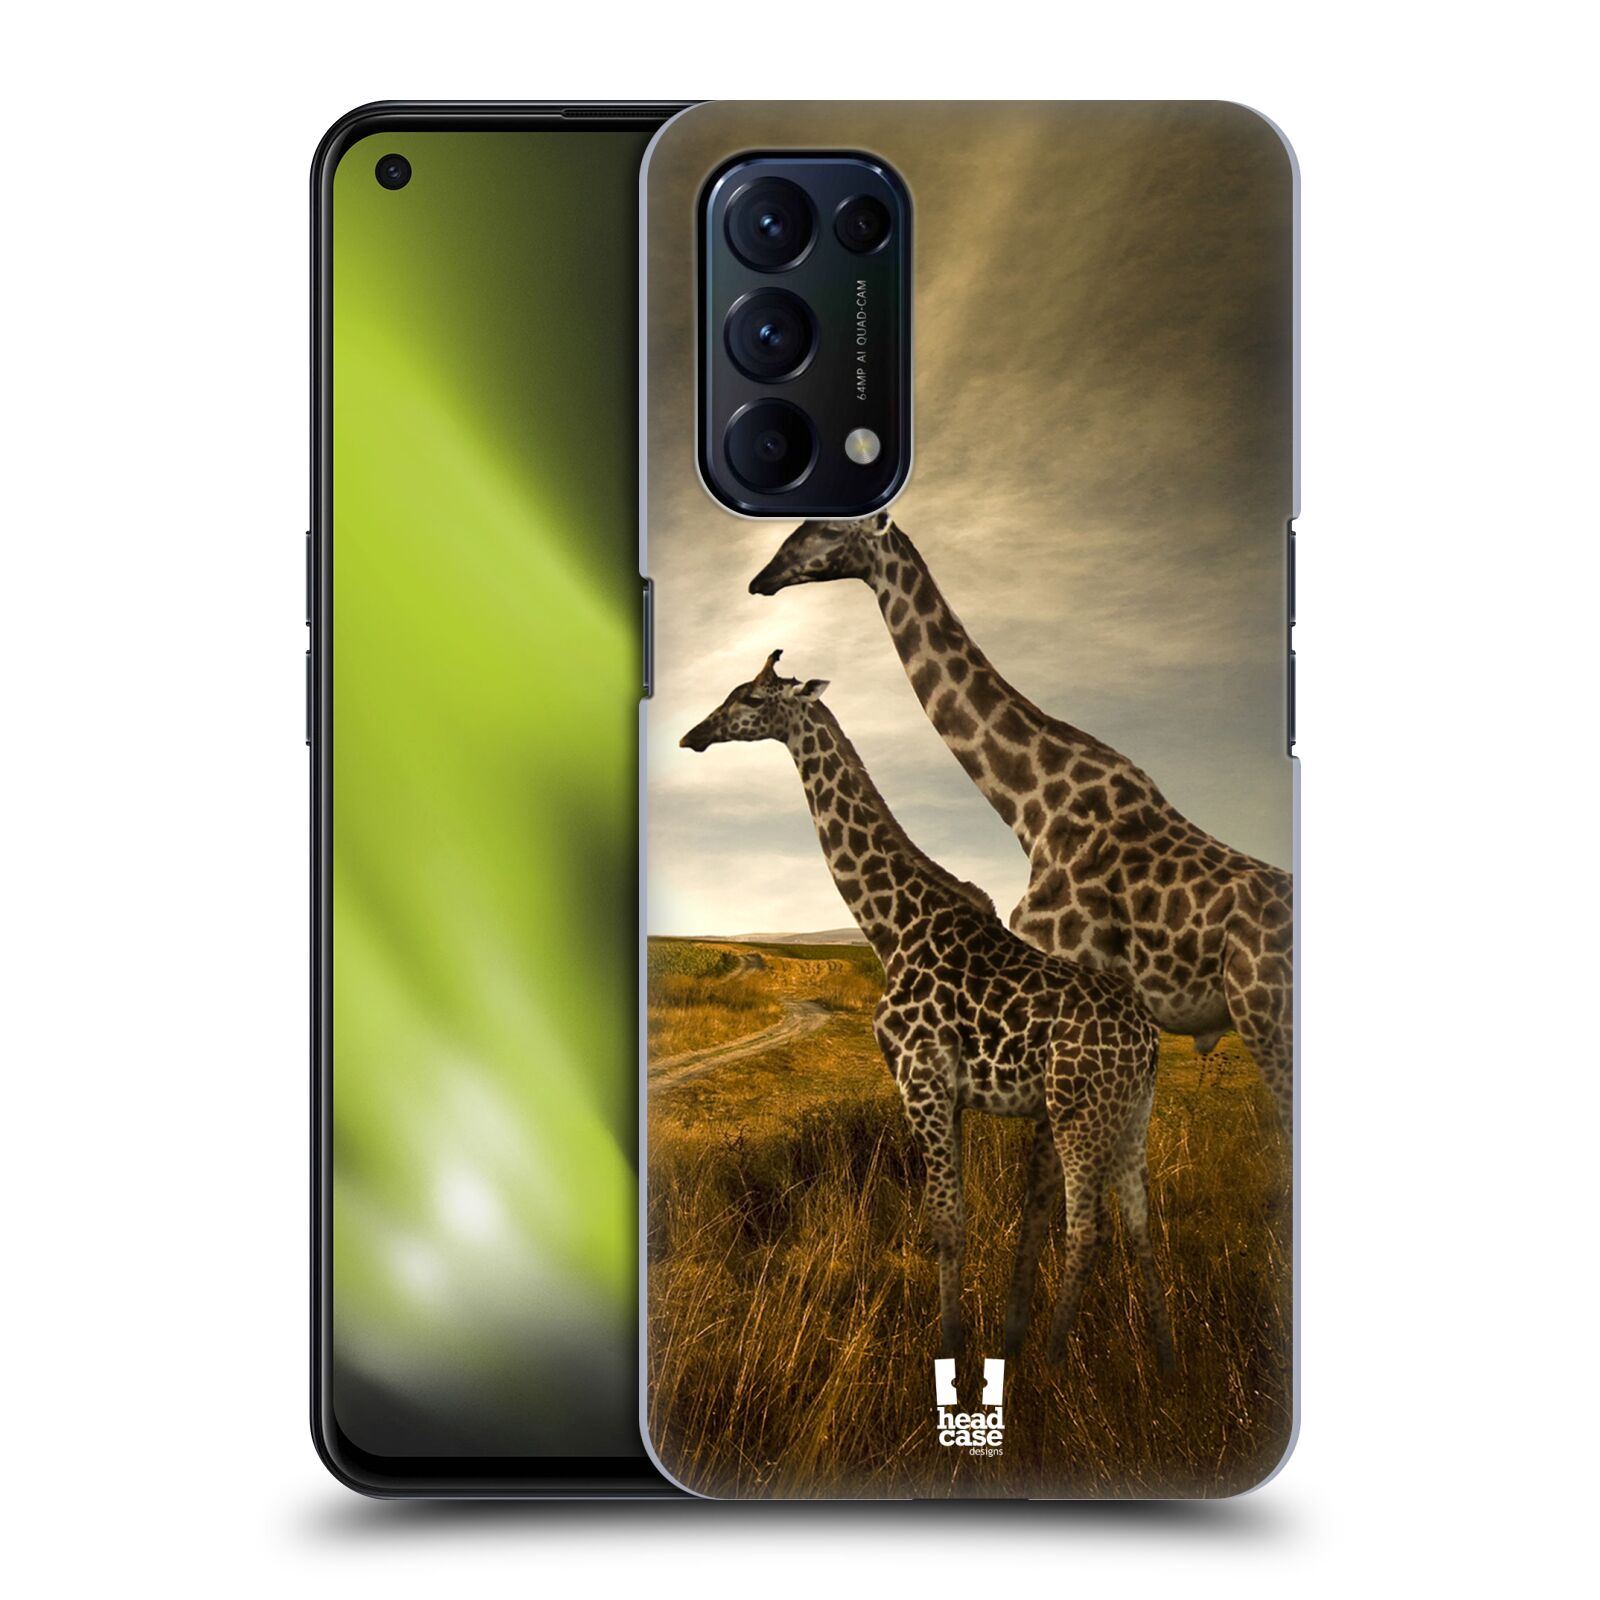 Zadní obal pro mobil Oppo Reno 5 (5G) - HEAD CASE - Svět zvířat žirafy